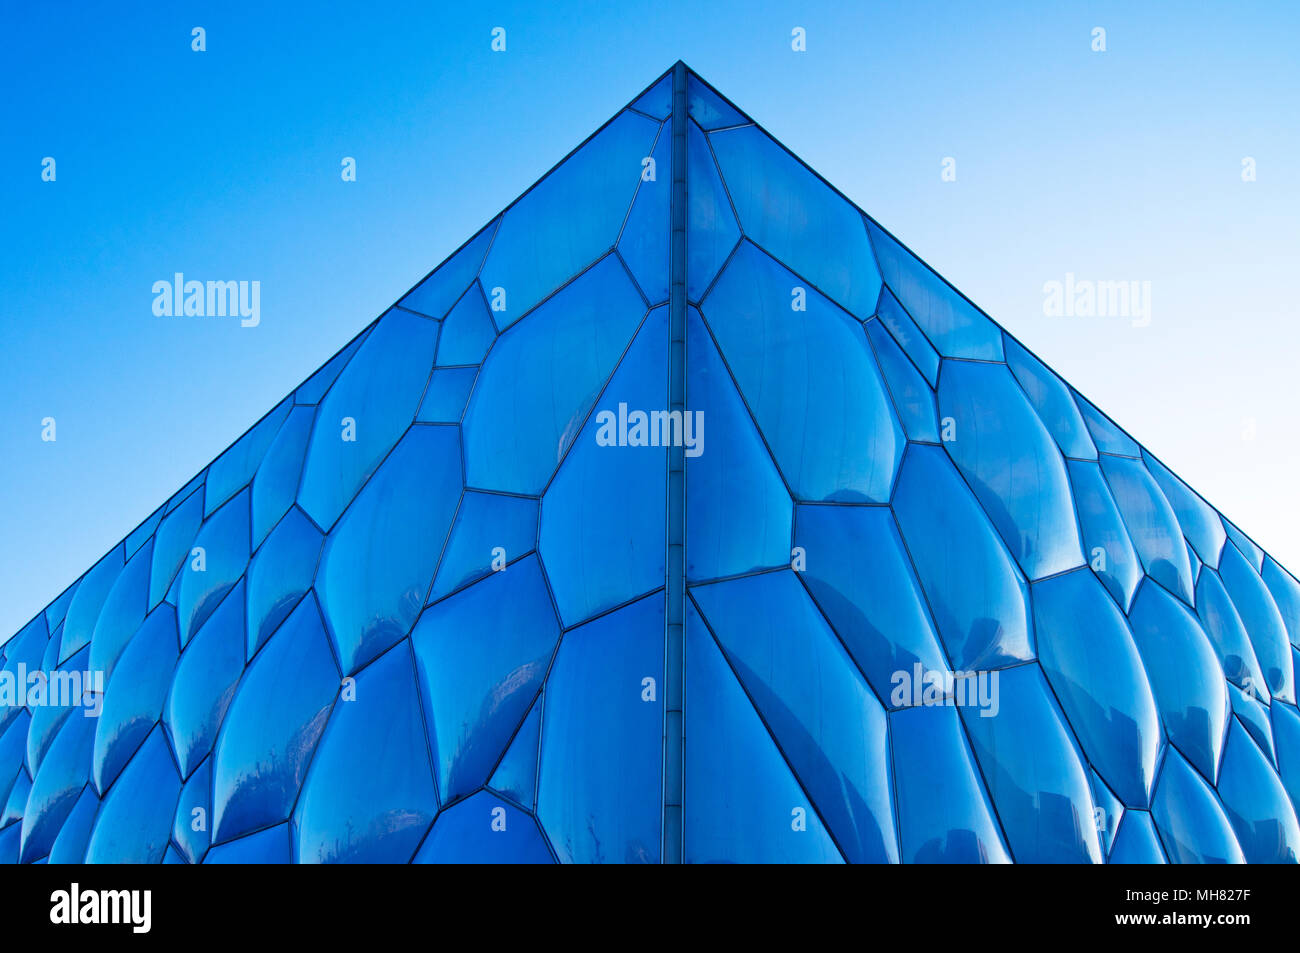 Un détail de la Centre national de natation de Pékin, appelé familièrement le Cube d'eau, dans le Parc olympique de Beijing, Chine. Banque D'Images